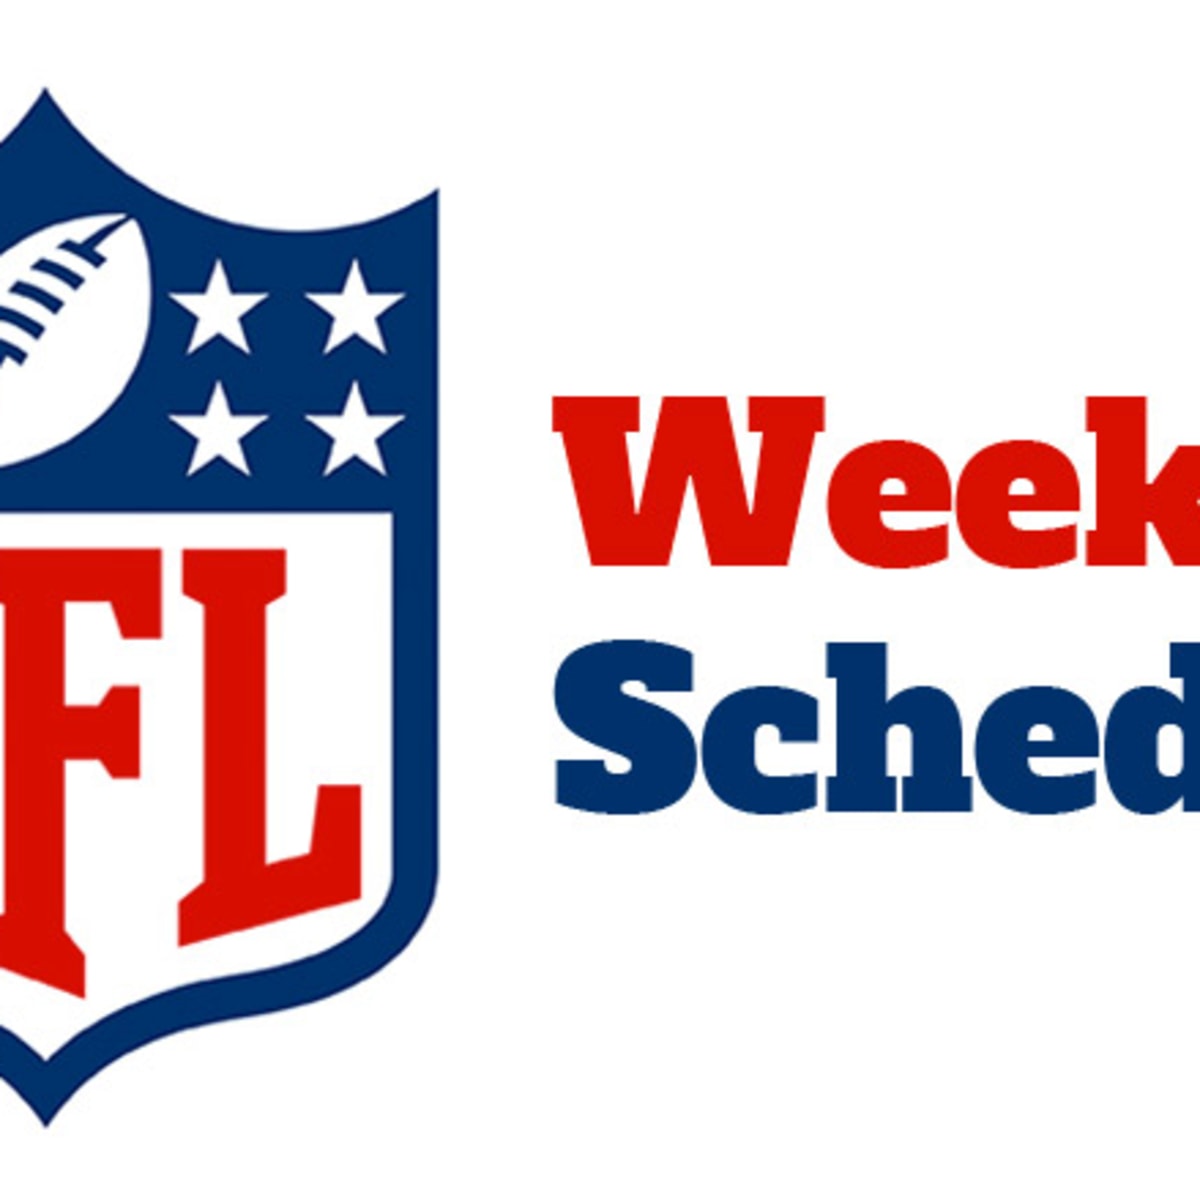 nfl football week one schedule